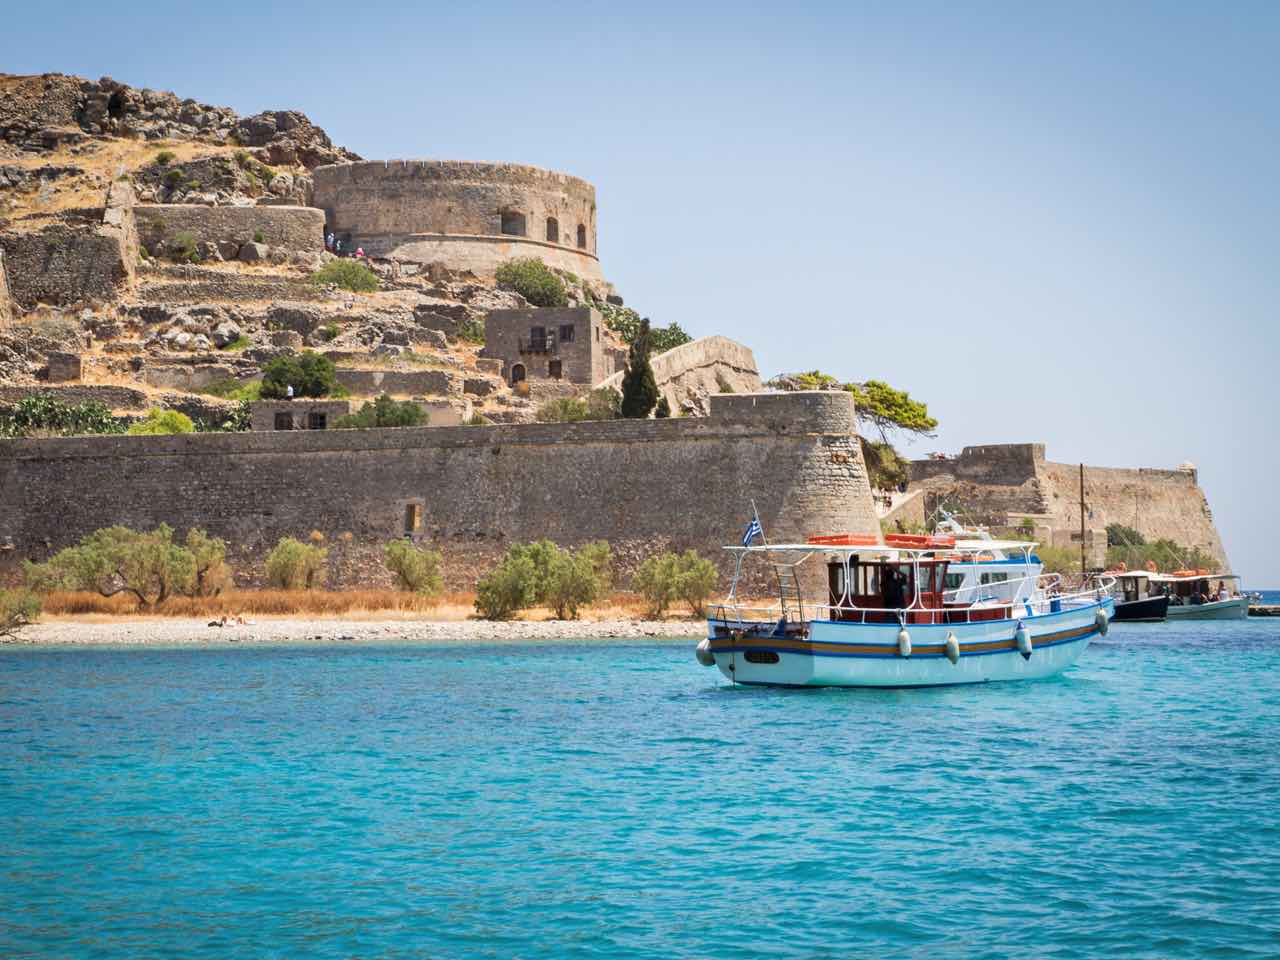 Crete to Host 20th FEG European Tourist Guides Meeting